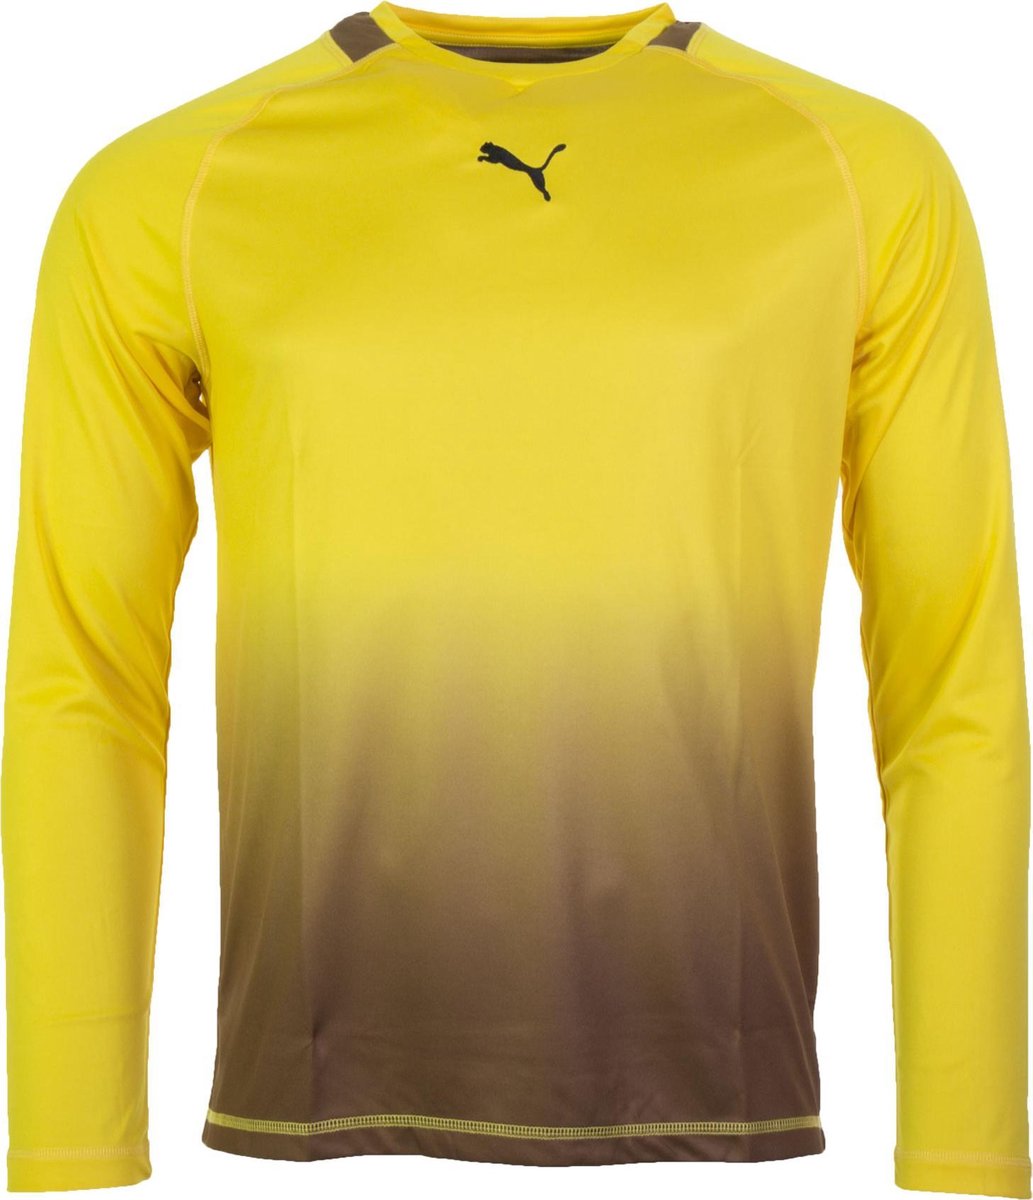 Puma Afrika Keepersshirt Promo Sportshirt performance - XL - Mannen - geel/bruin bol.com